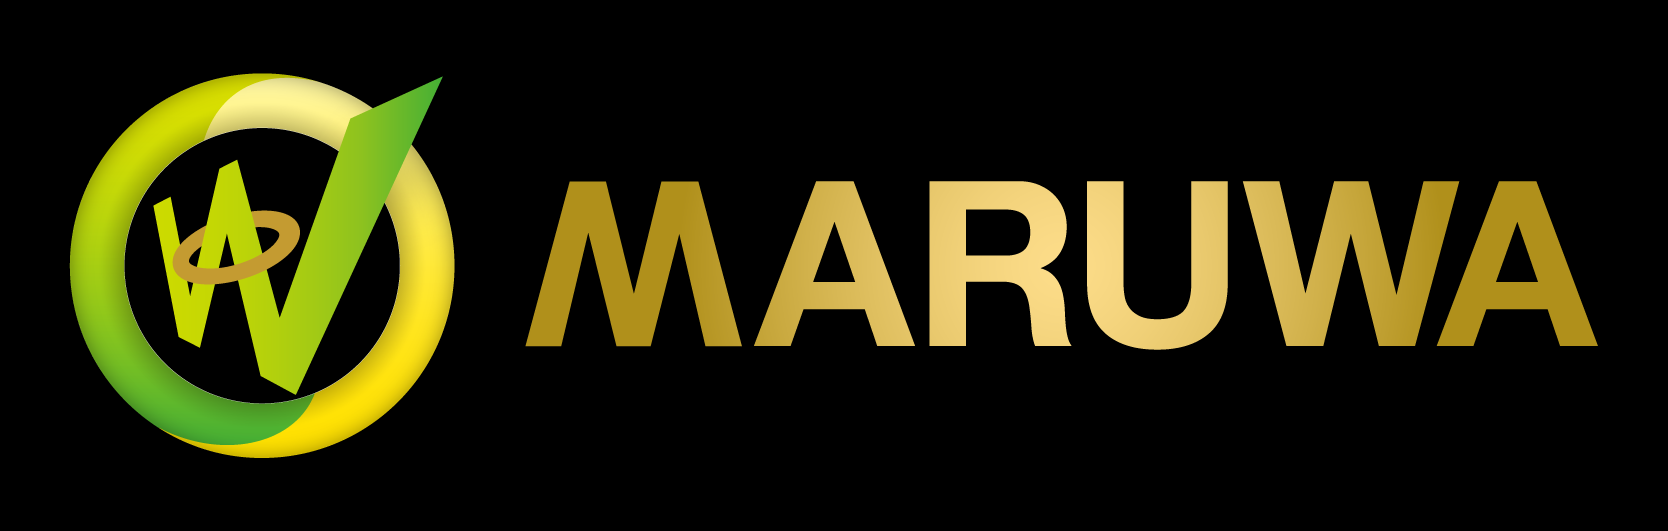 maruwa_new_logo.png